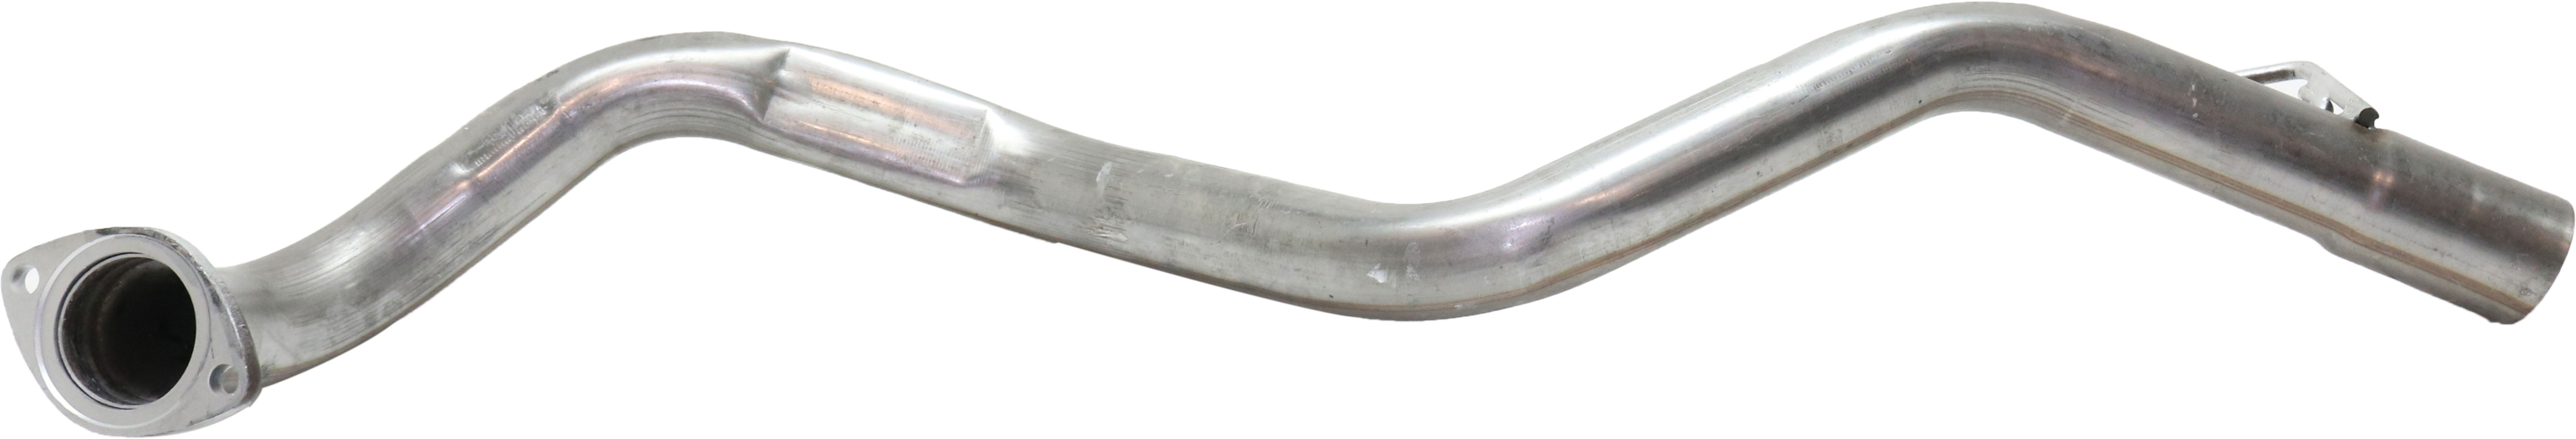 evan fischer tail pipe